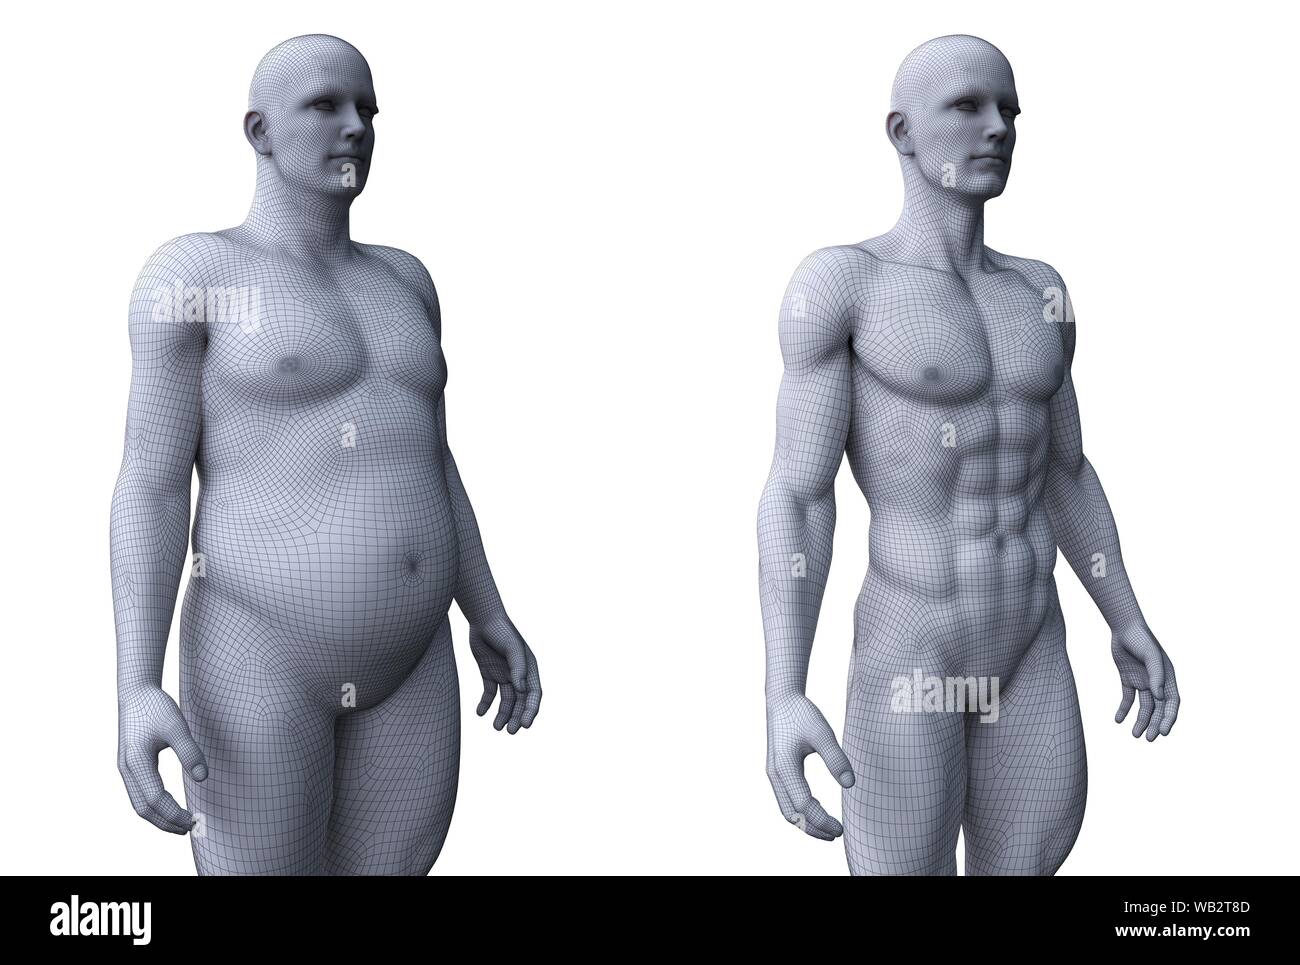 Comparaison de l'ajustement et un homme obèse, illustration de l'ordinateur. Banque D'Images